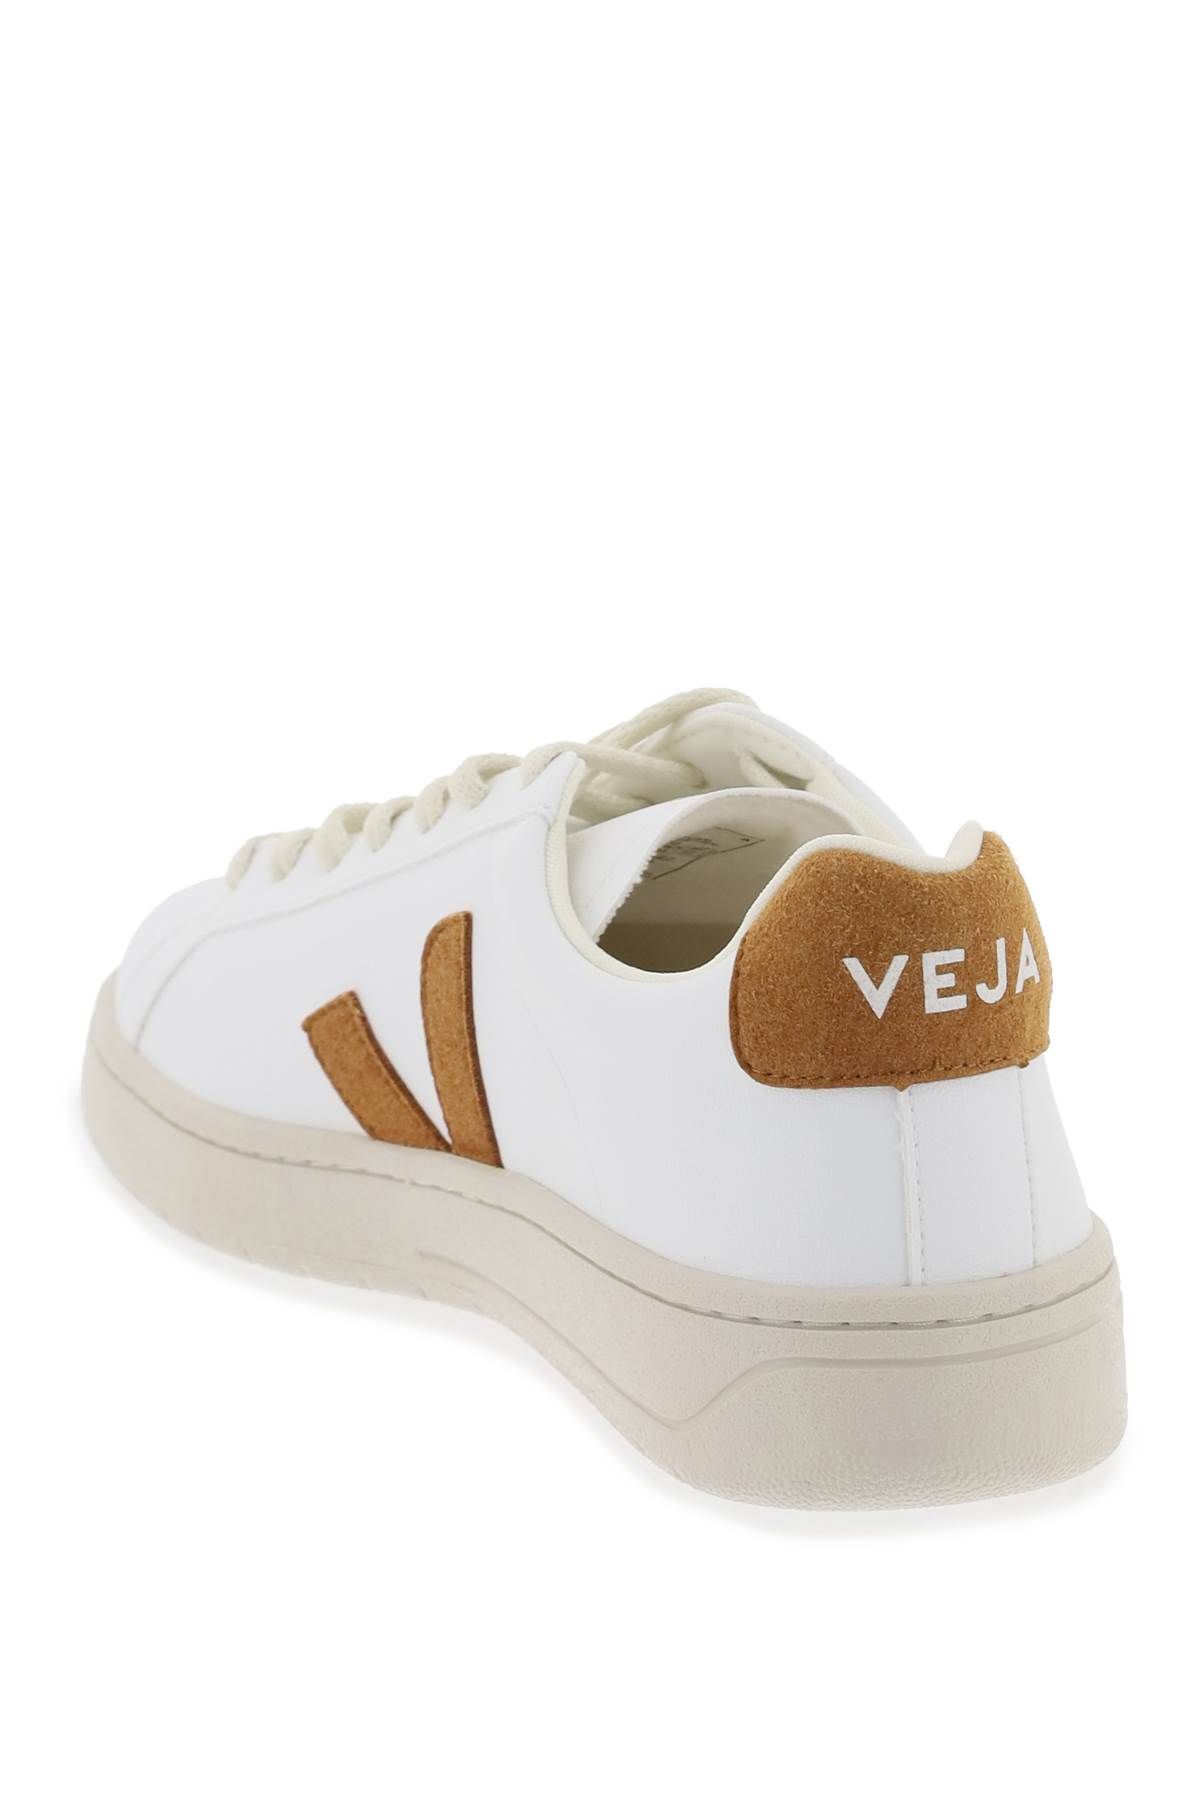 Shop Veja 'urca' Vegan Sneakers In White,brown